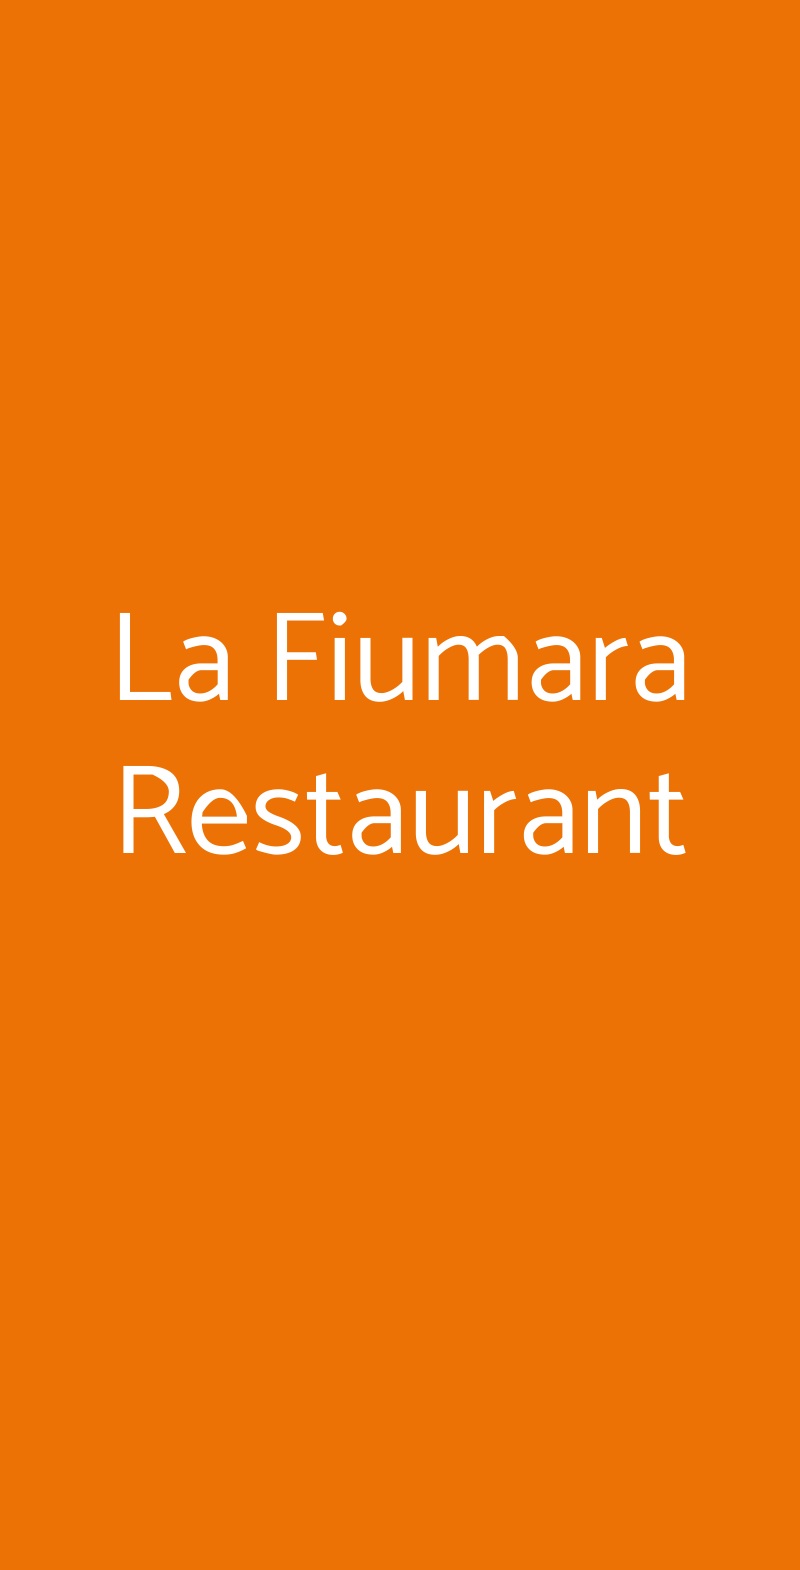 La Fiumara Restaurant Noto menù 1 pagina